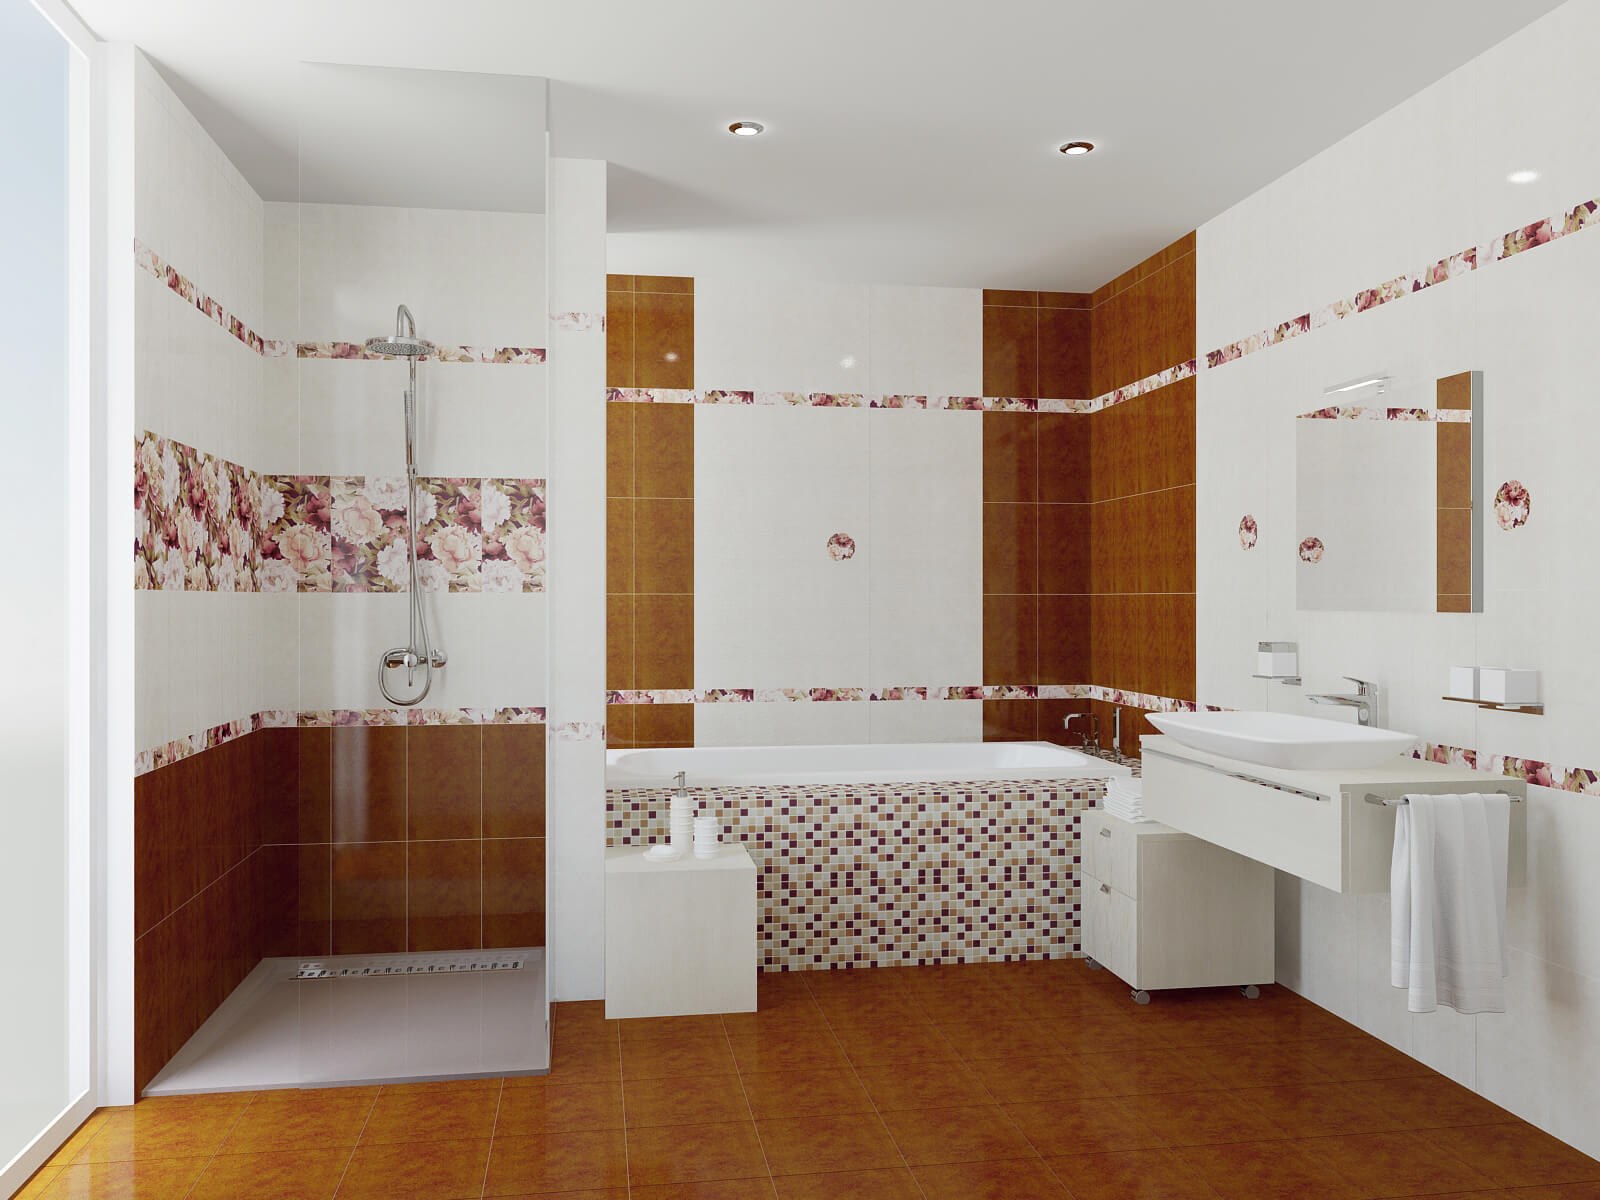 Ванной комнаты распродажа. Ceramica Classic Galatia Peony. Плитка в ванную. Плитка настенная для ванной. Керамика плитка для ванной.